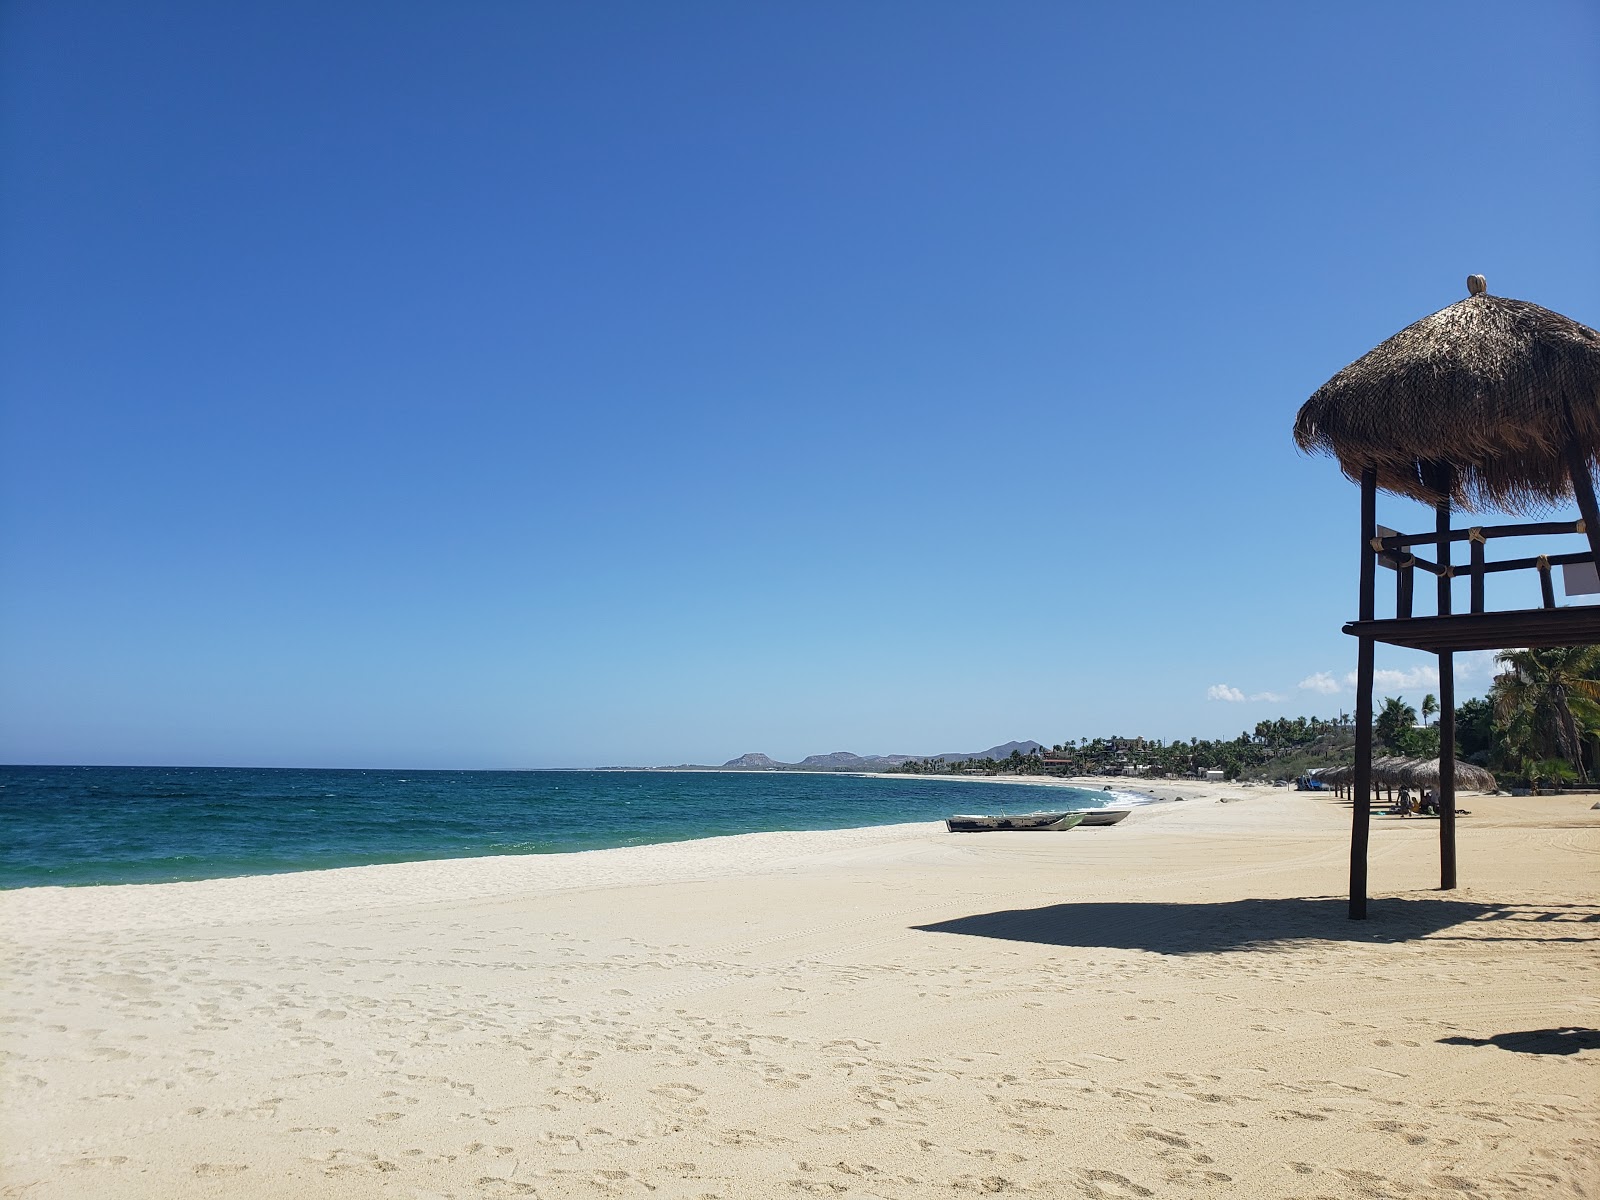 Playa buena vista'in fotoğrafı - rahatlamayı sevenler arasında popüler bir yer